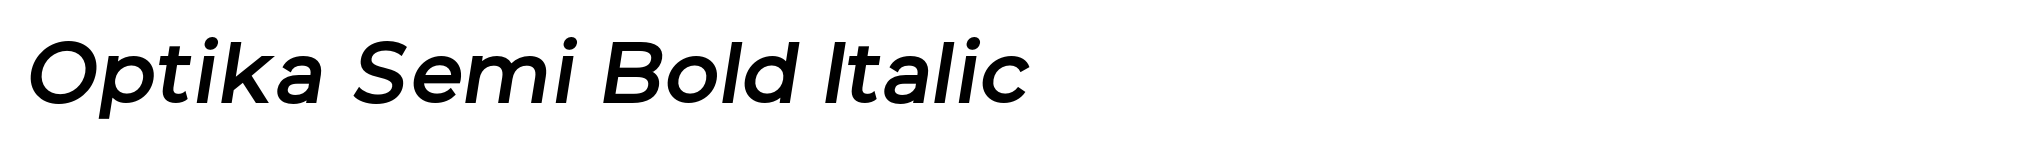 Optika Semi Bold Italic image